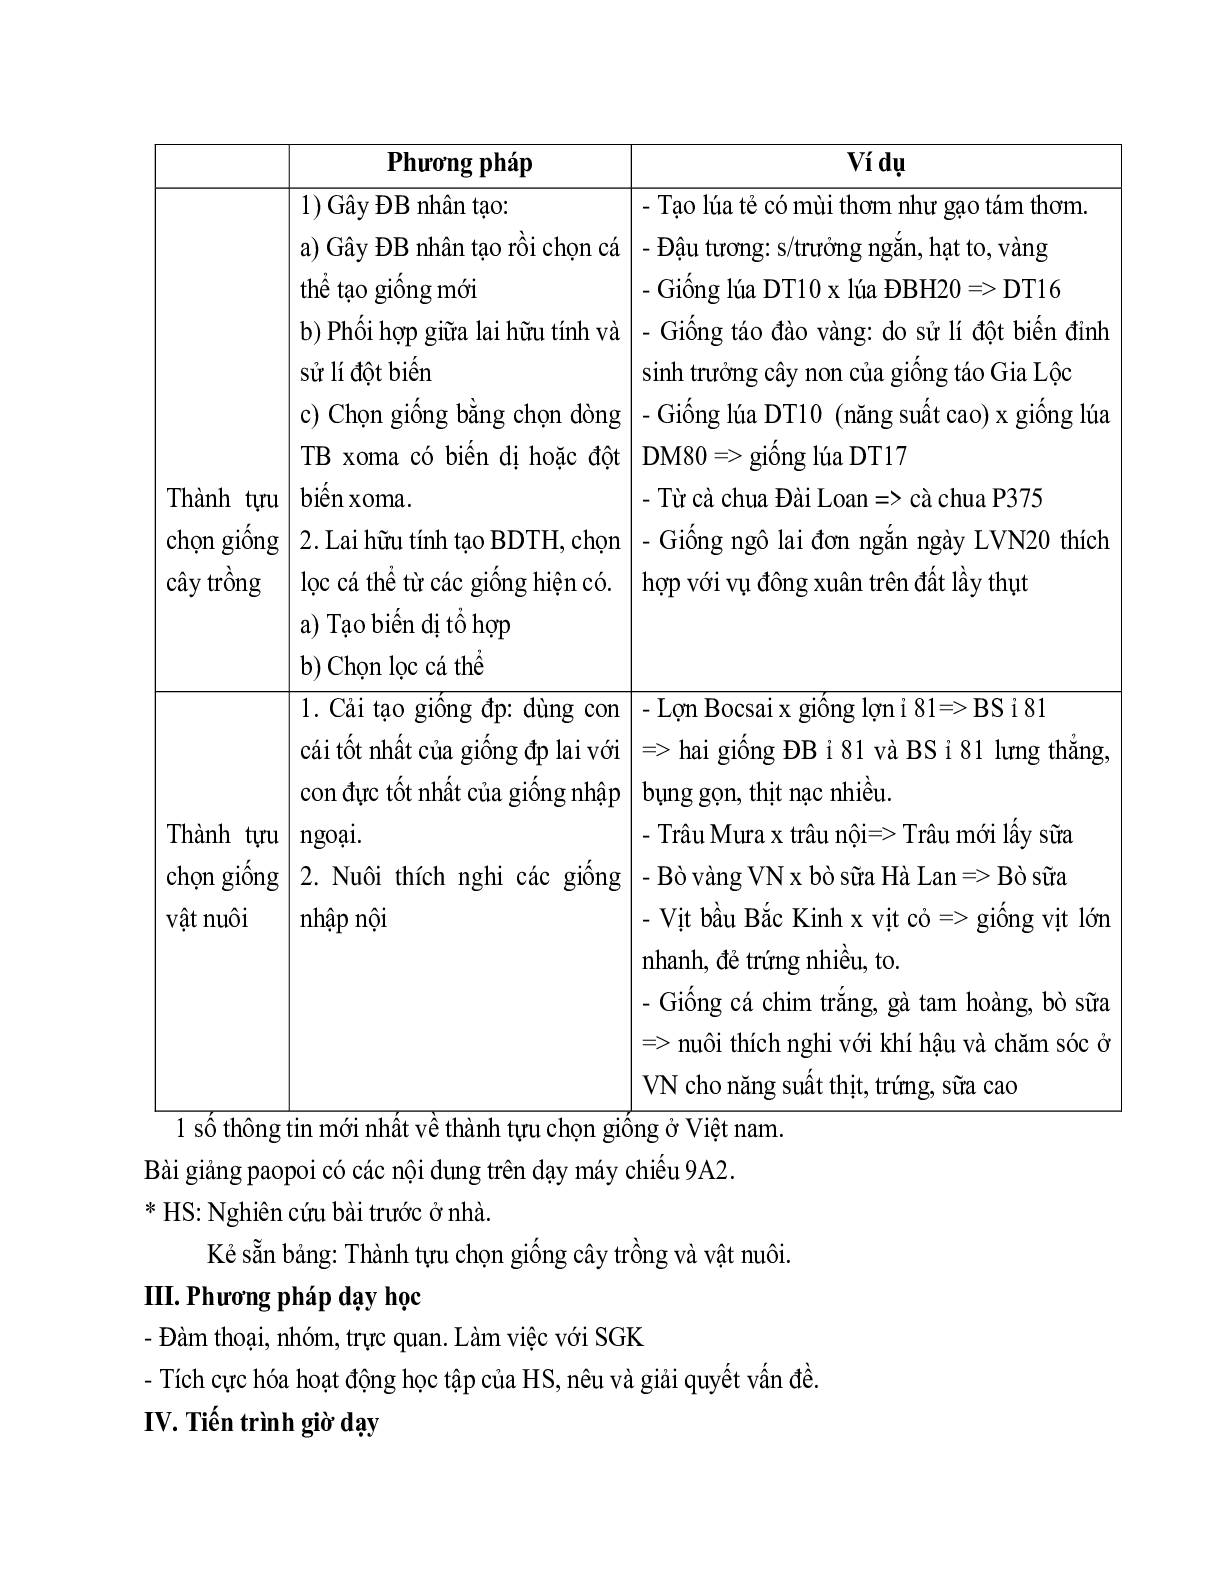 Giáo án Sinh học 9 Bài 37: Thành tựu chọn giống ở Việt Nam mới nhất (trang 2)